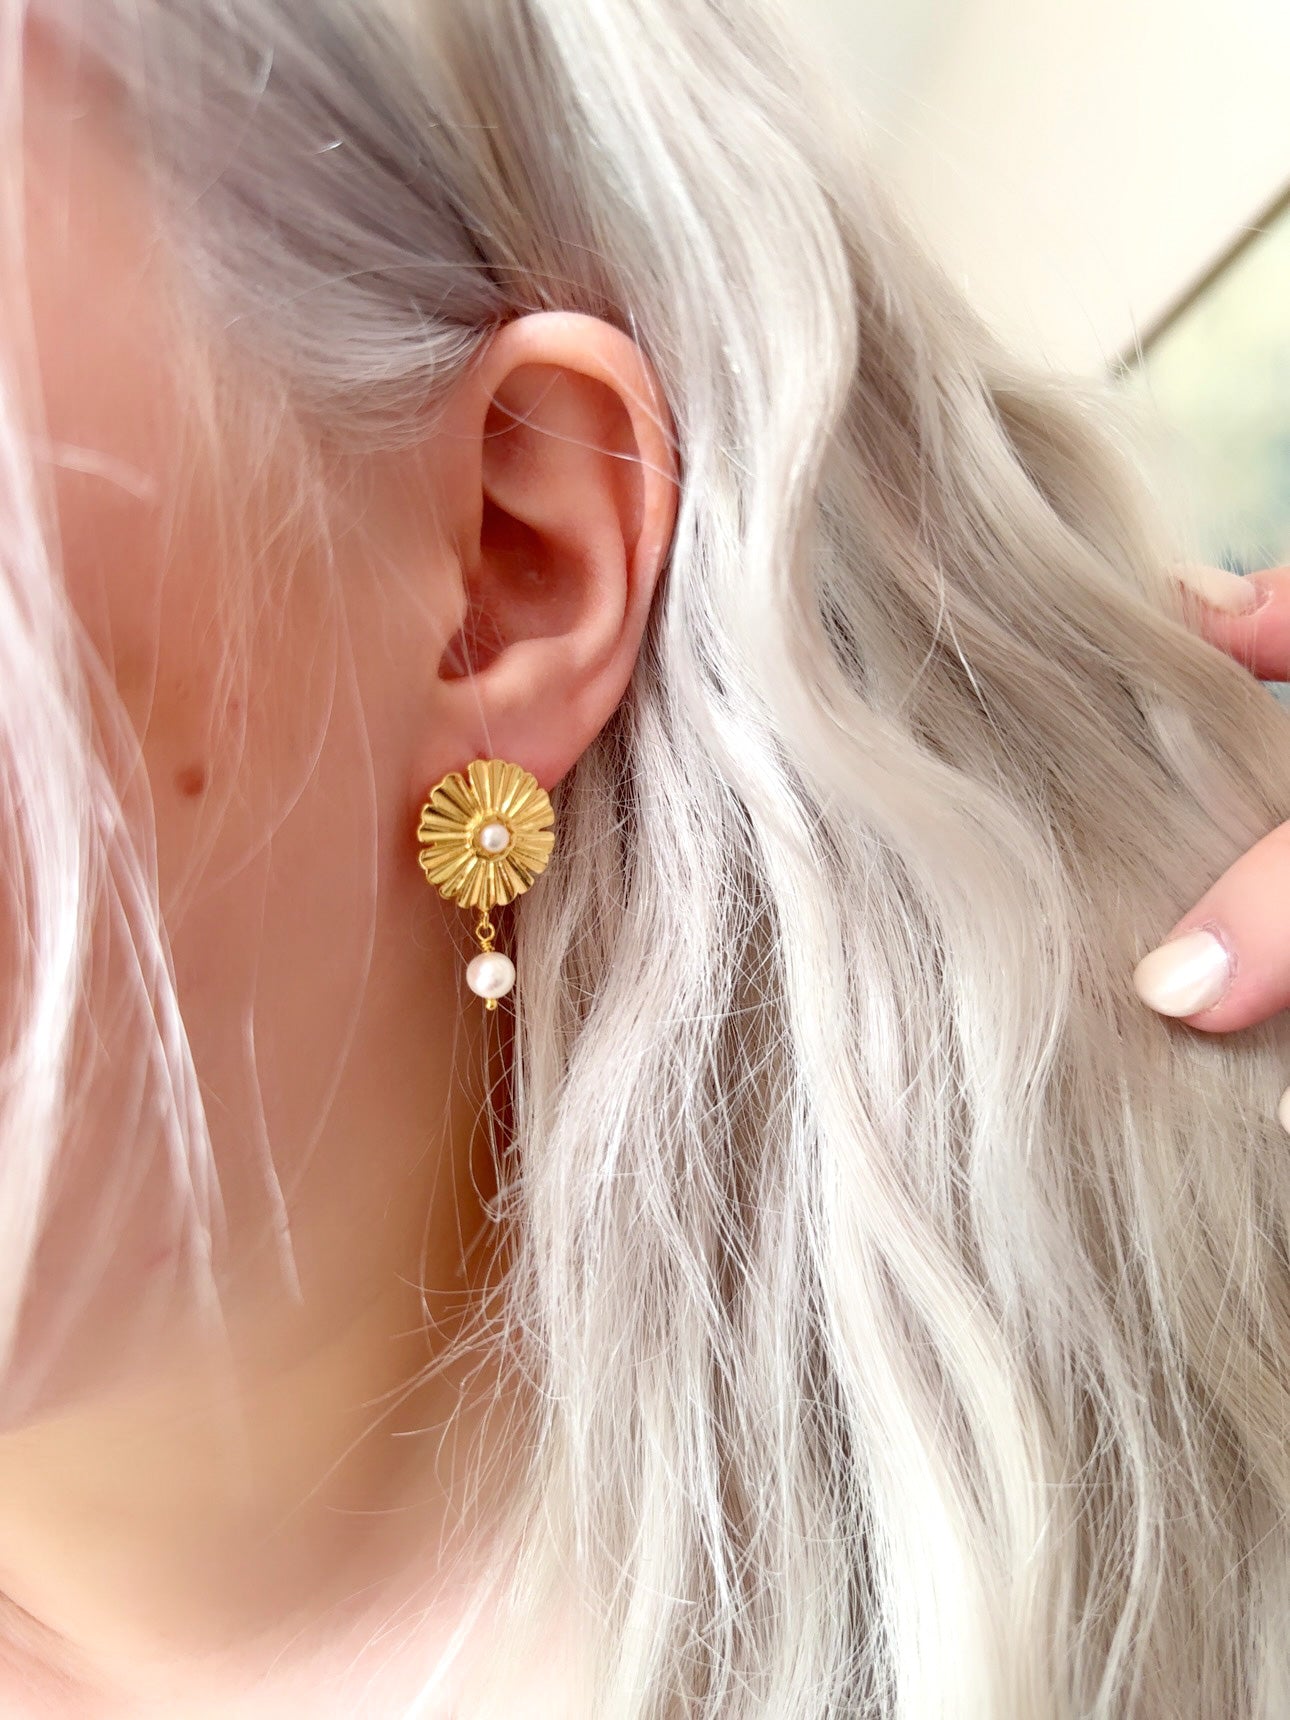 The “Oceana” Fleur Earrings